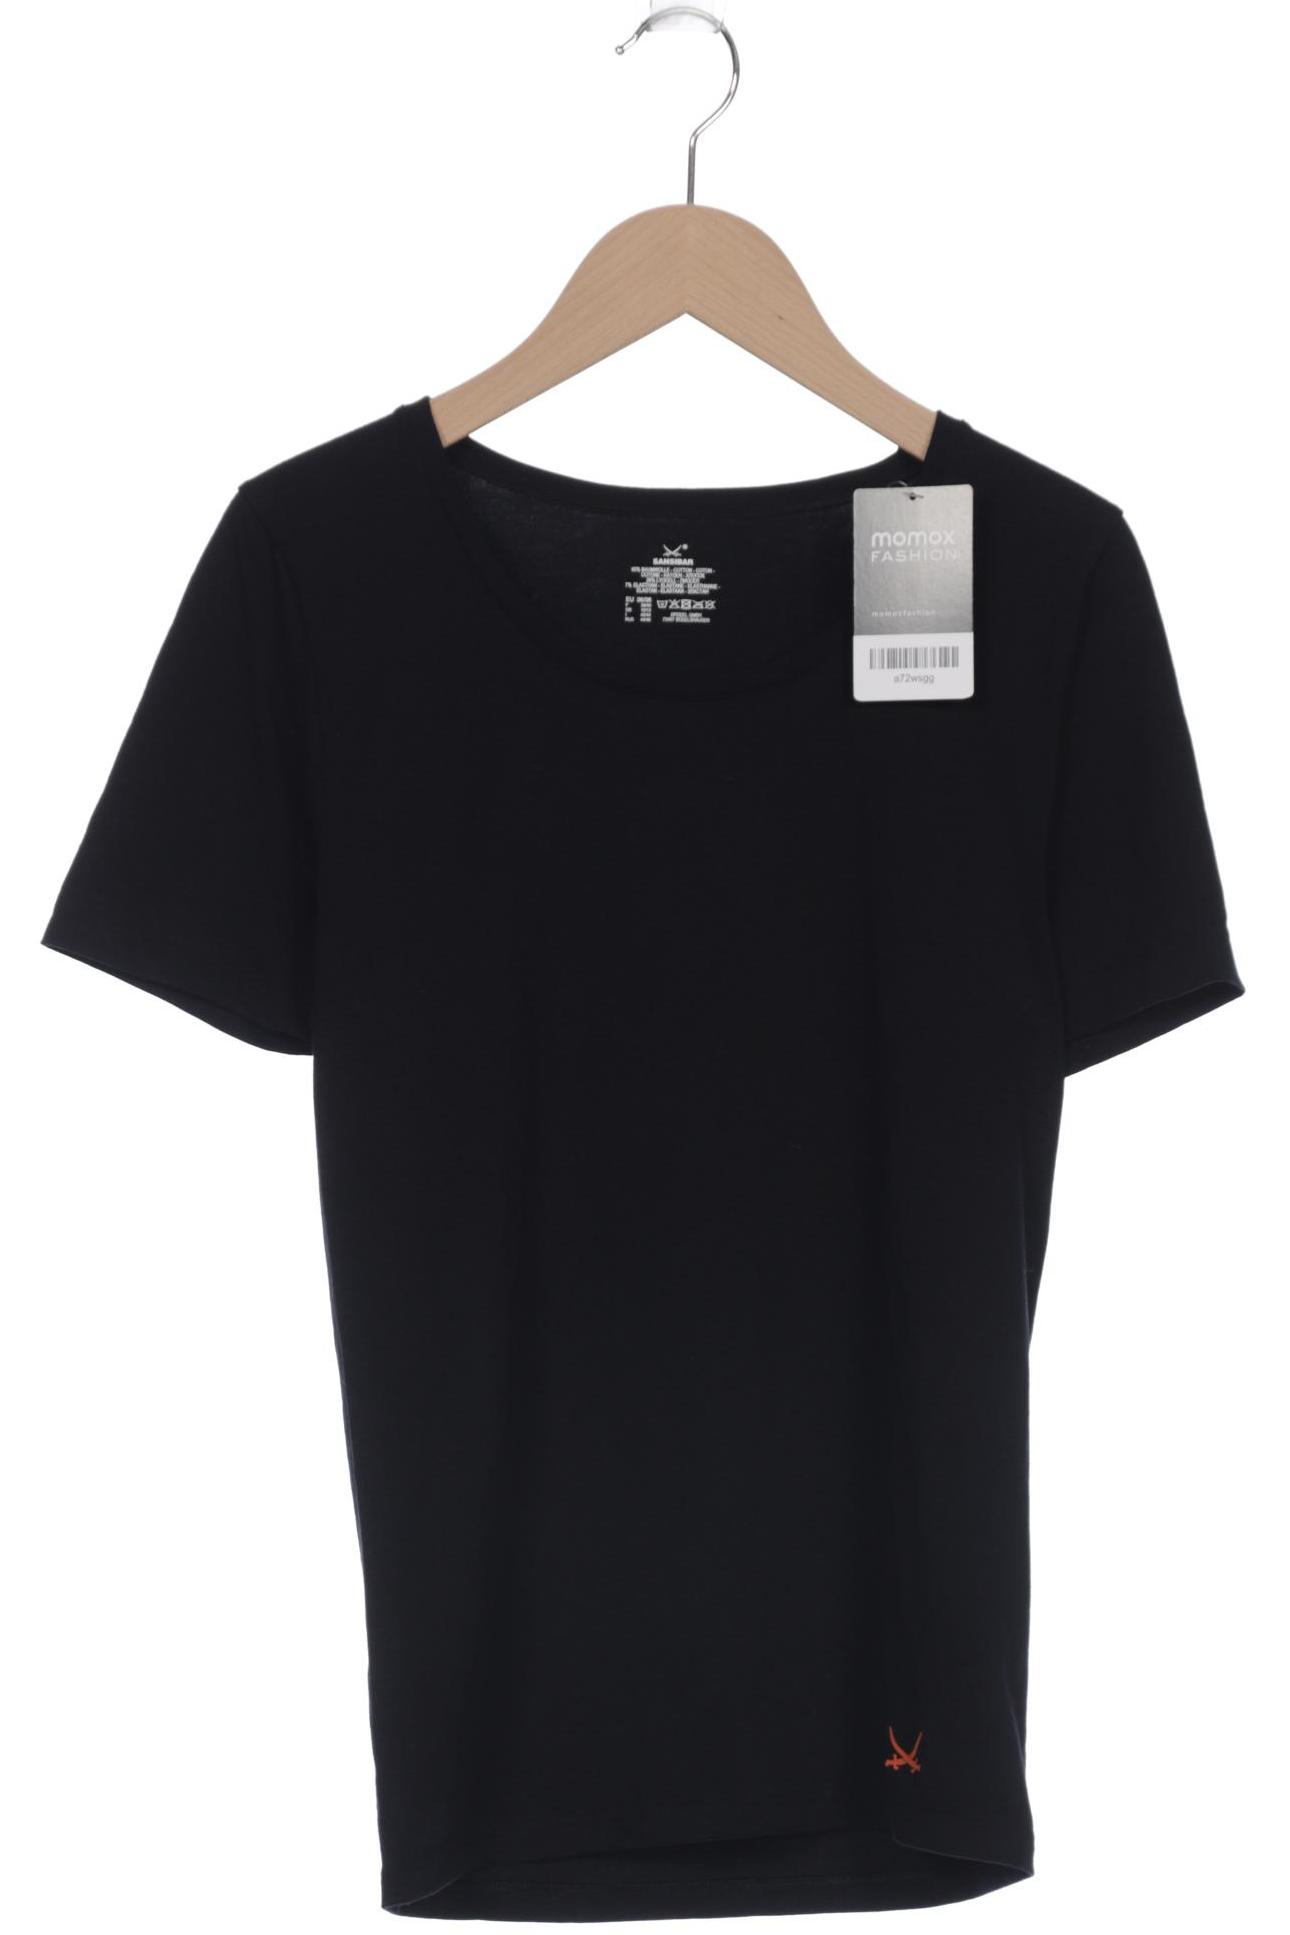 Sansibar Damen T-Shirt, marineblau, Gr. 36 von Sansibar